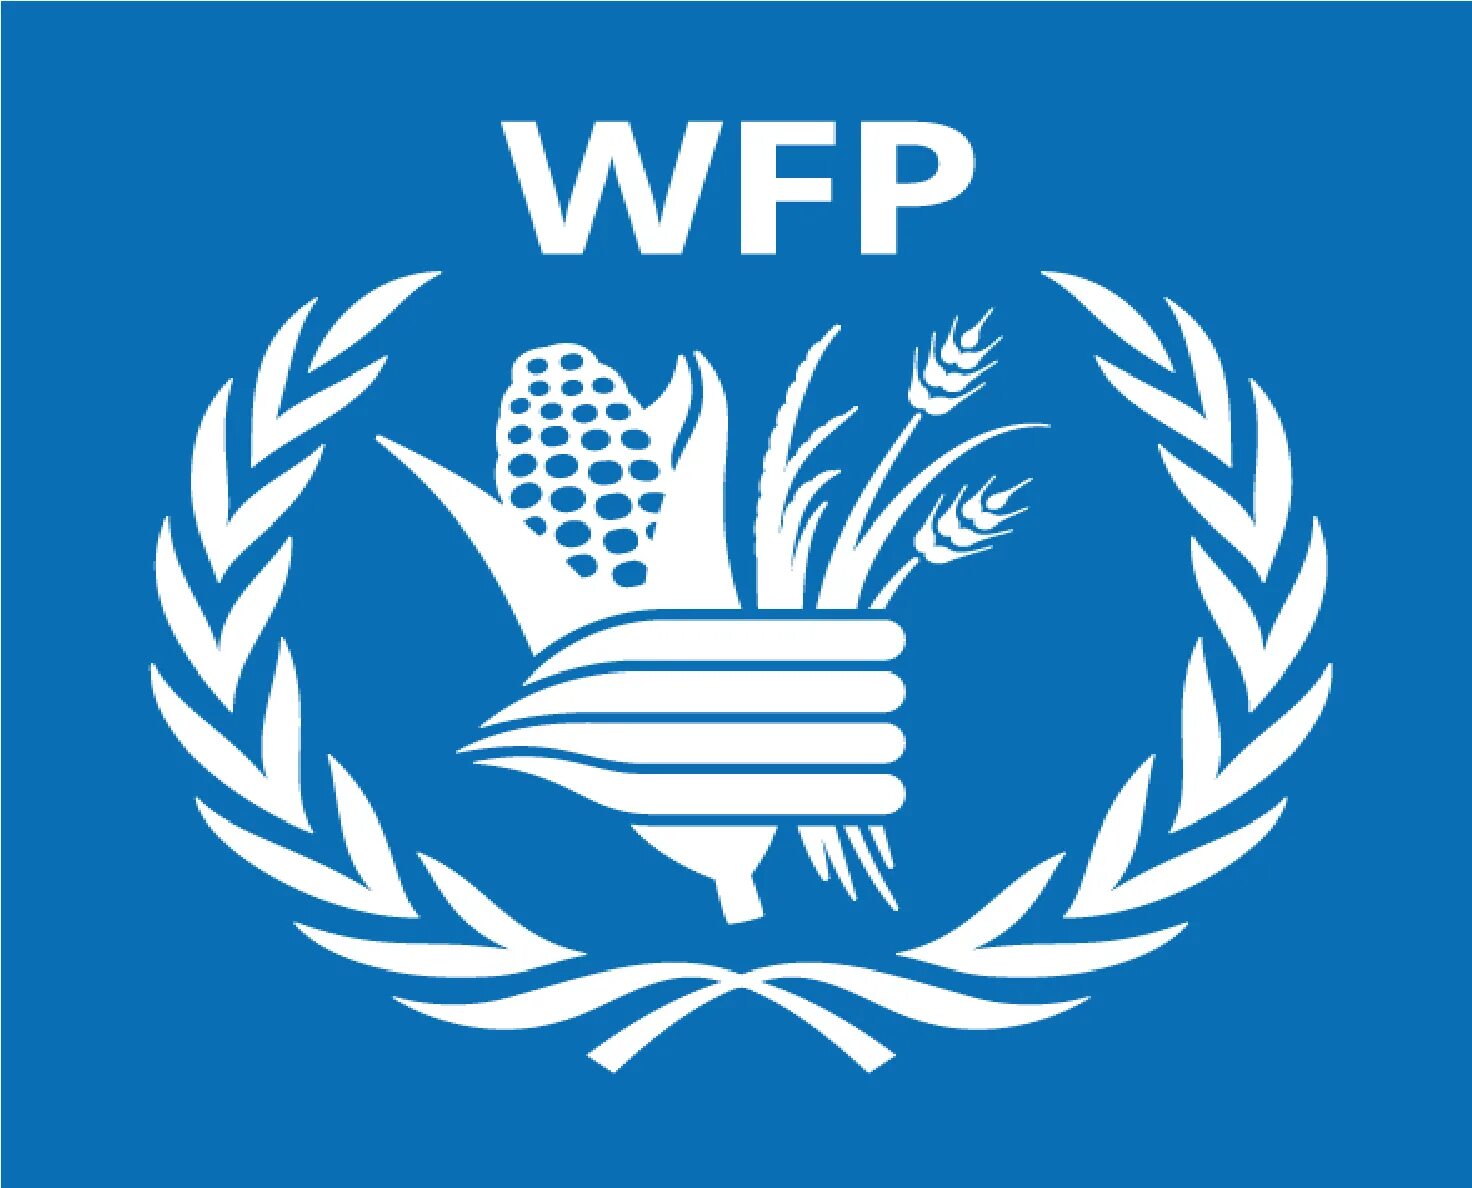 ООН WFP. Всемирная продовольственная программа ООН (ВПП). WFP логотип. Флаг WFP. Продовольственная оон